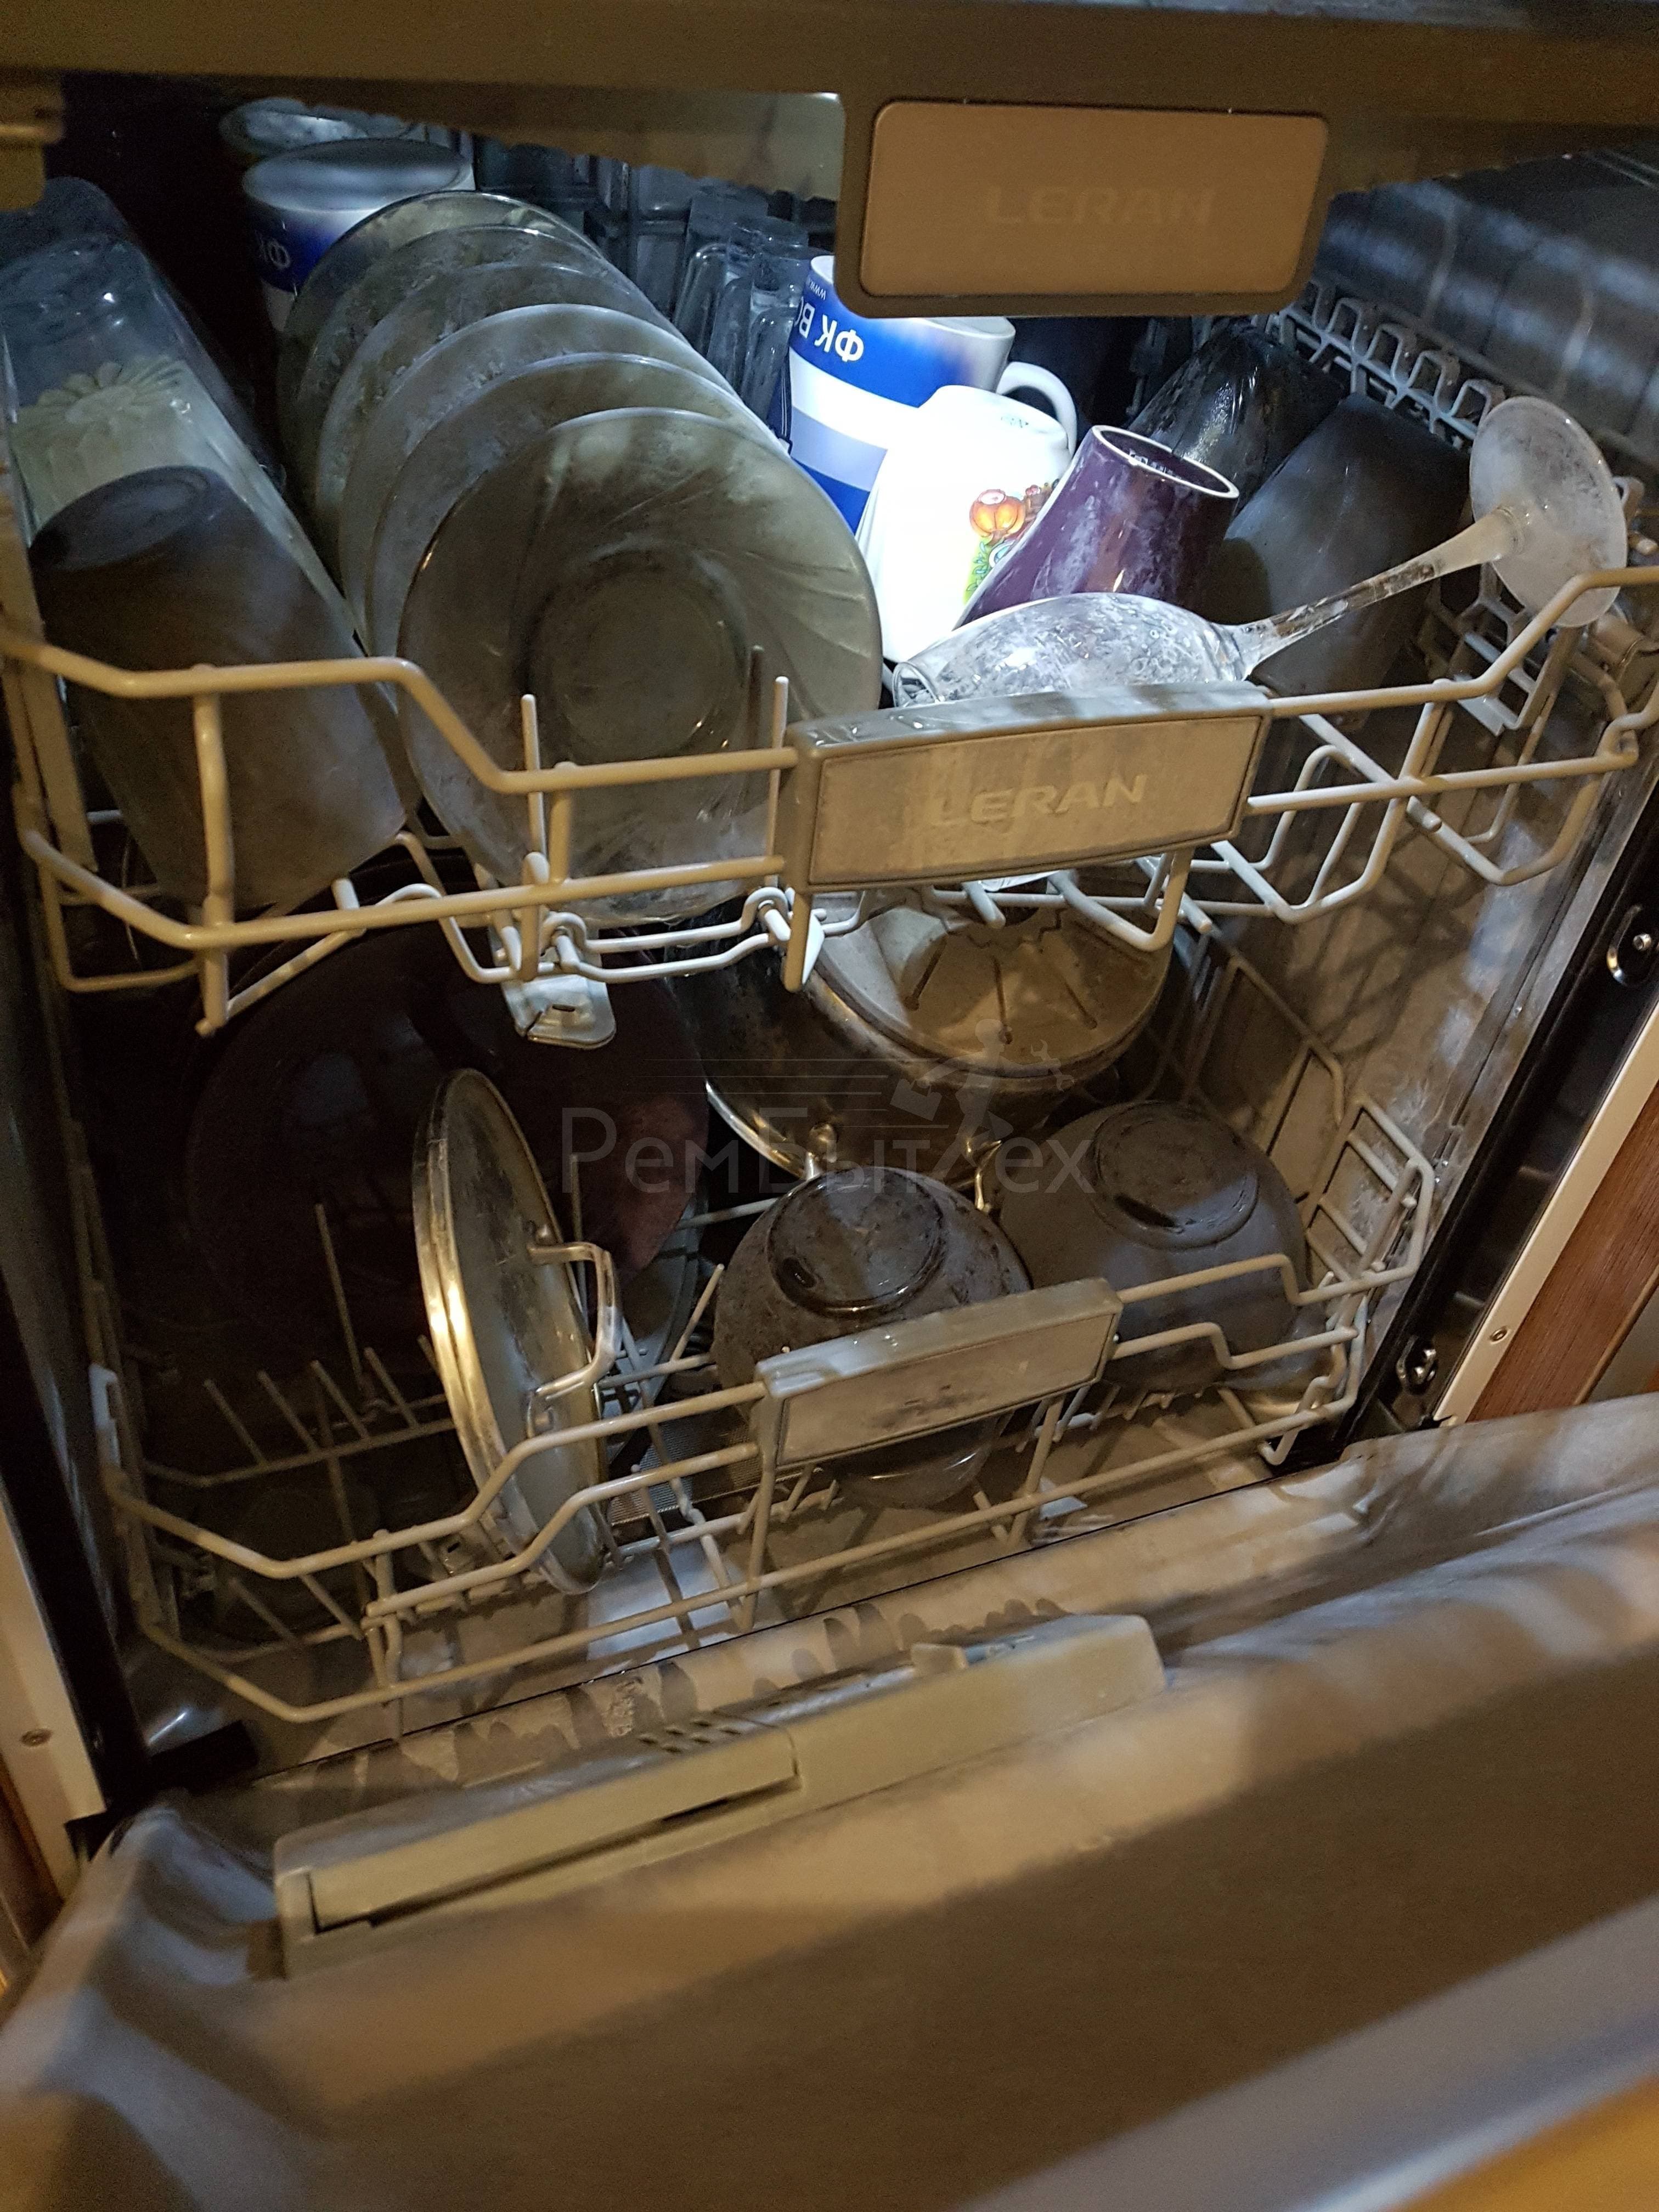 После мытья посуды в посудомоечной машине